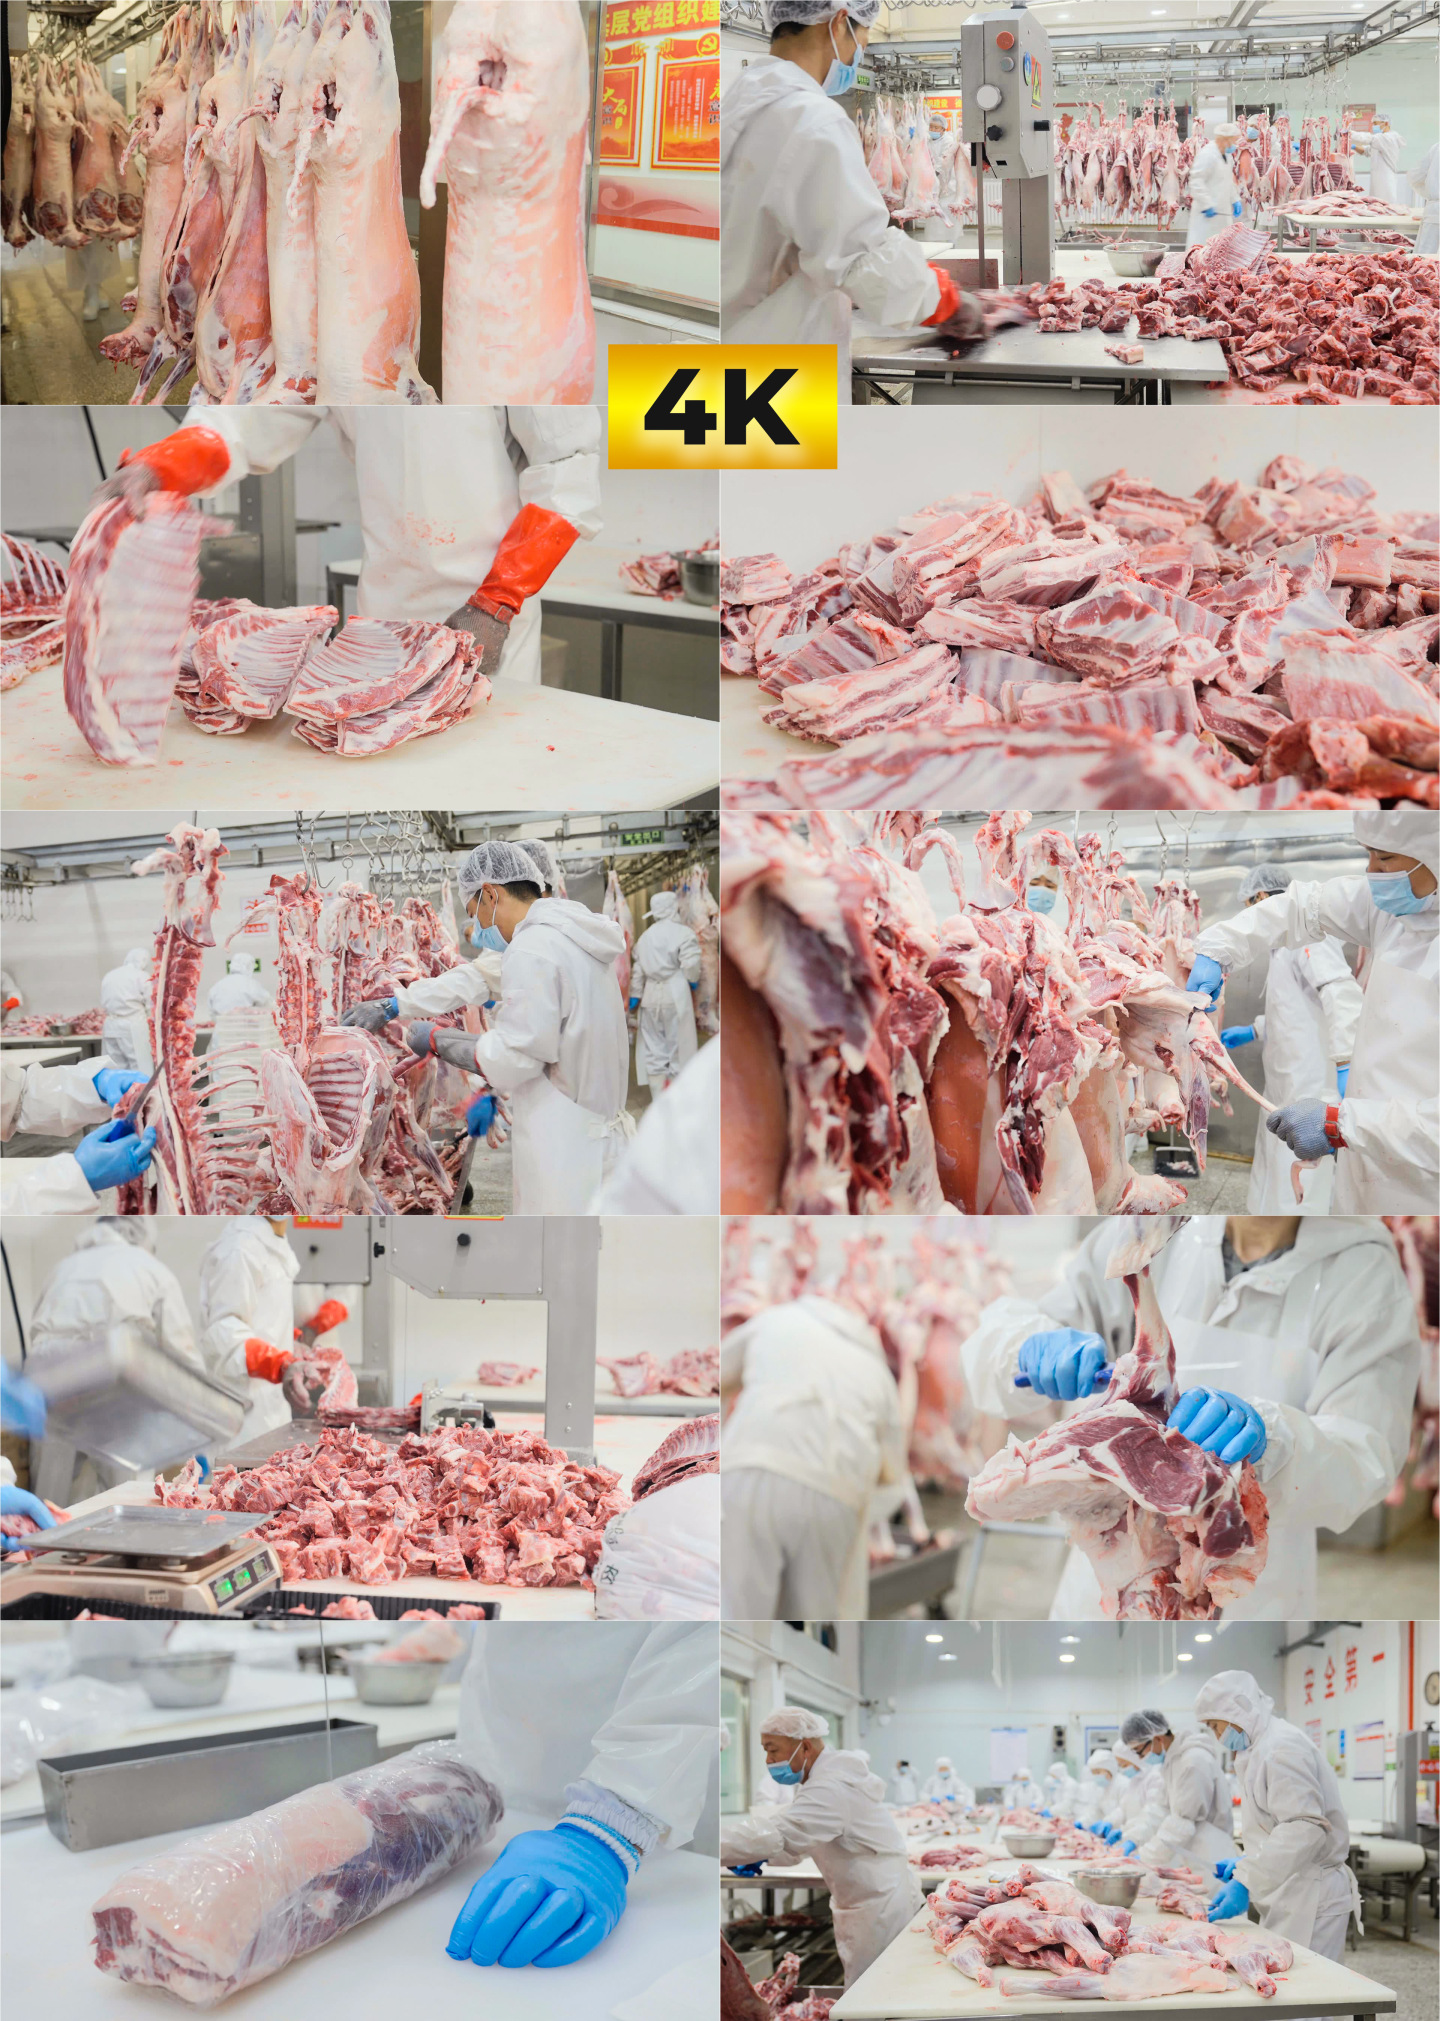 大型羊肉滩羊屠宰厂4K